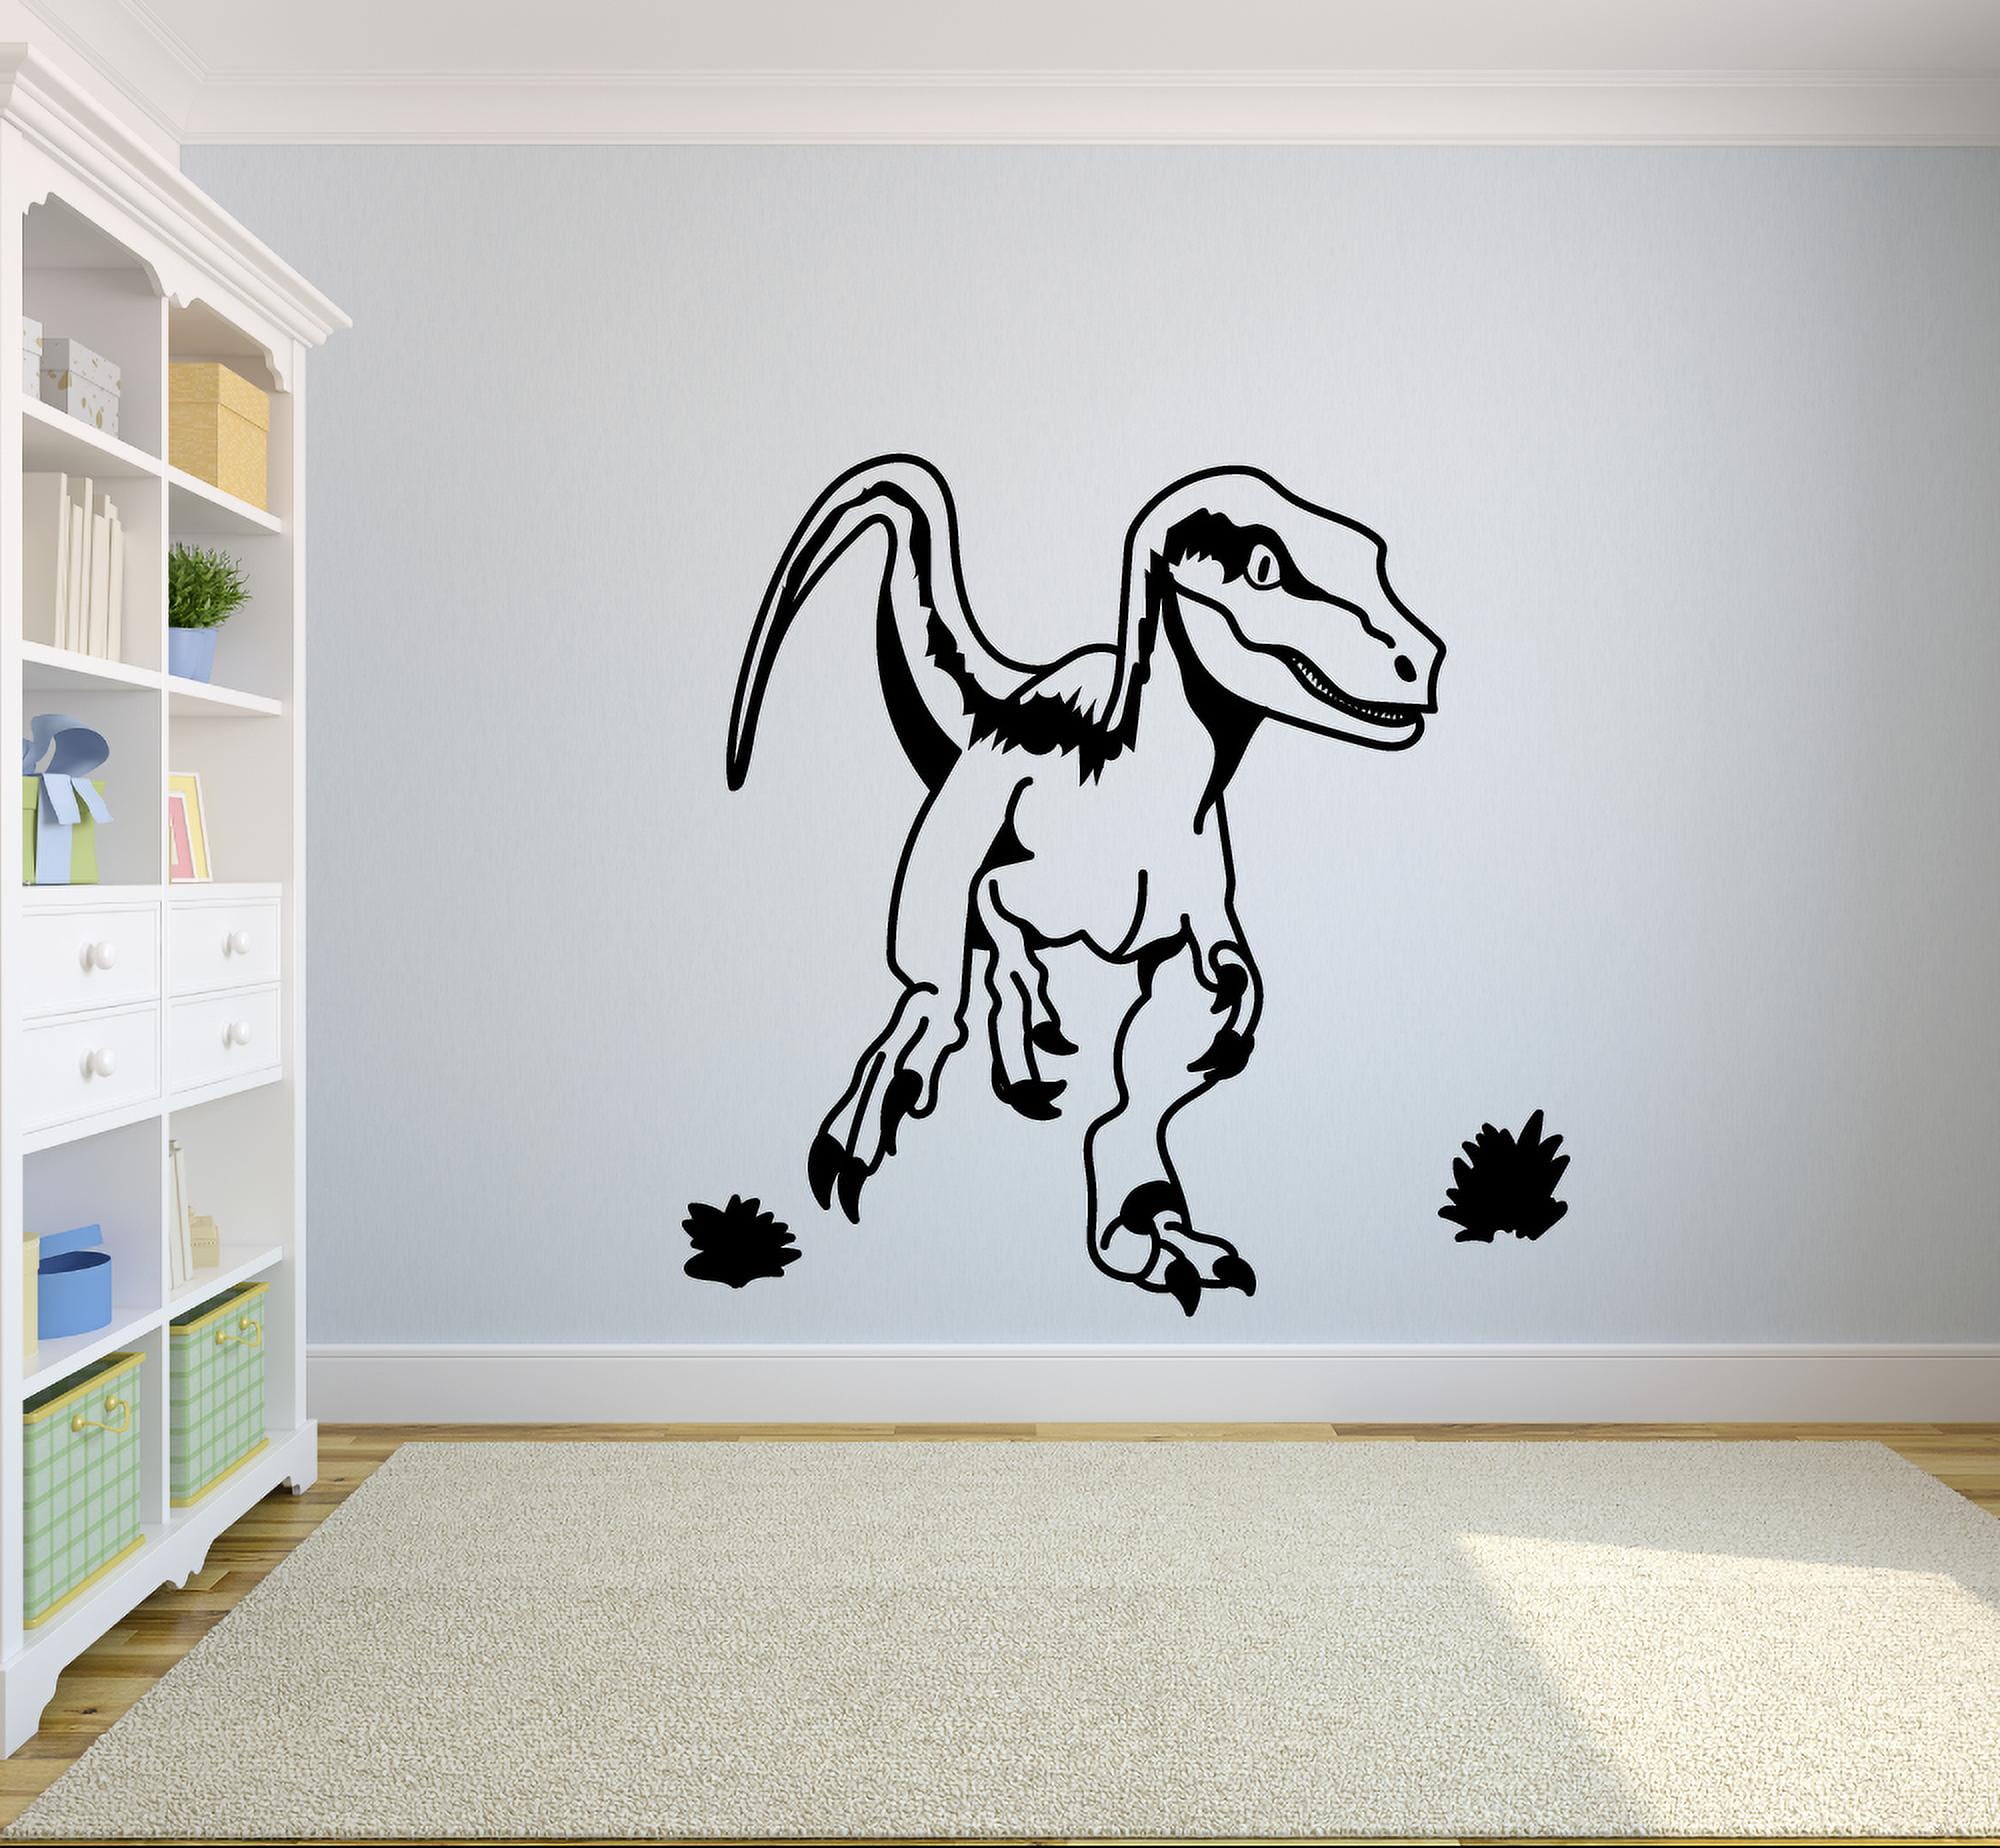 Super Mario Odyssey Wall Decal Sticker Bedroom Vinyl Kids Art Dinosaur T Rex 